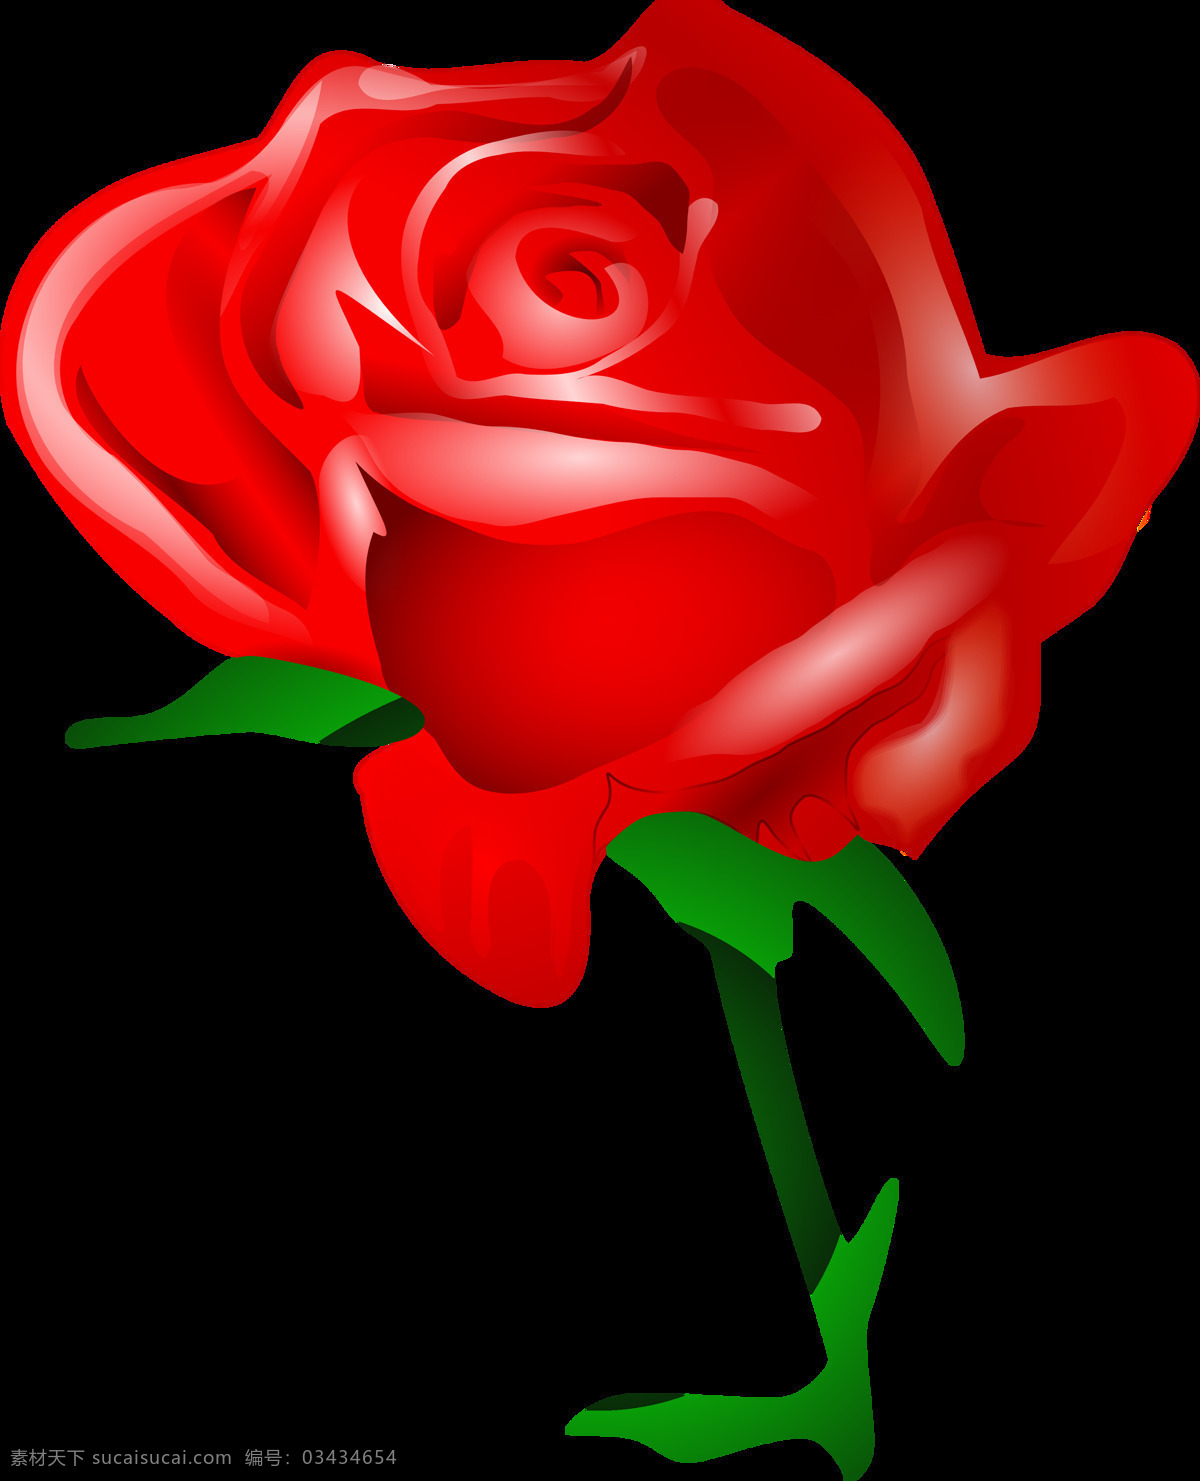 手绘 漂亮 红玫瑰 免 抠 透明 图 层 朵 红玫瑰背景 血红玫瑰 9红玫瑰 玫瑰花语 红玫瑰素材 爱情素材 情人节素材 情人节元素 浪漫元素 爱情元素 红玫瑰图片